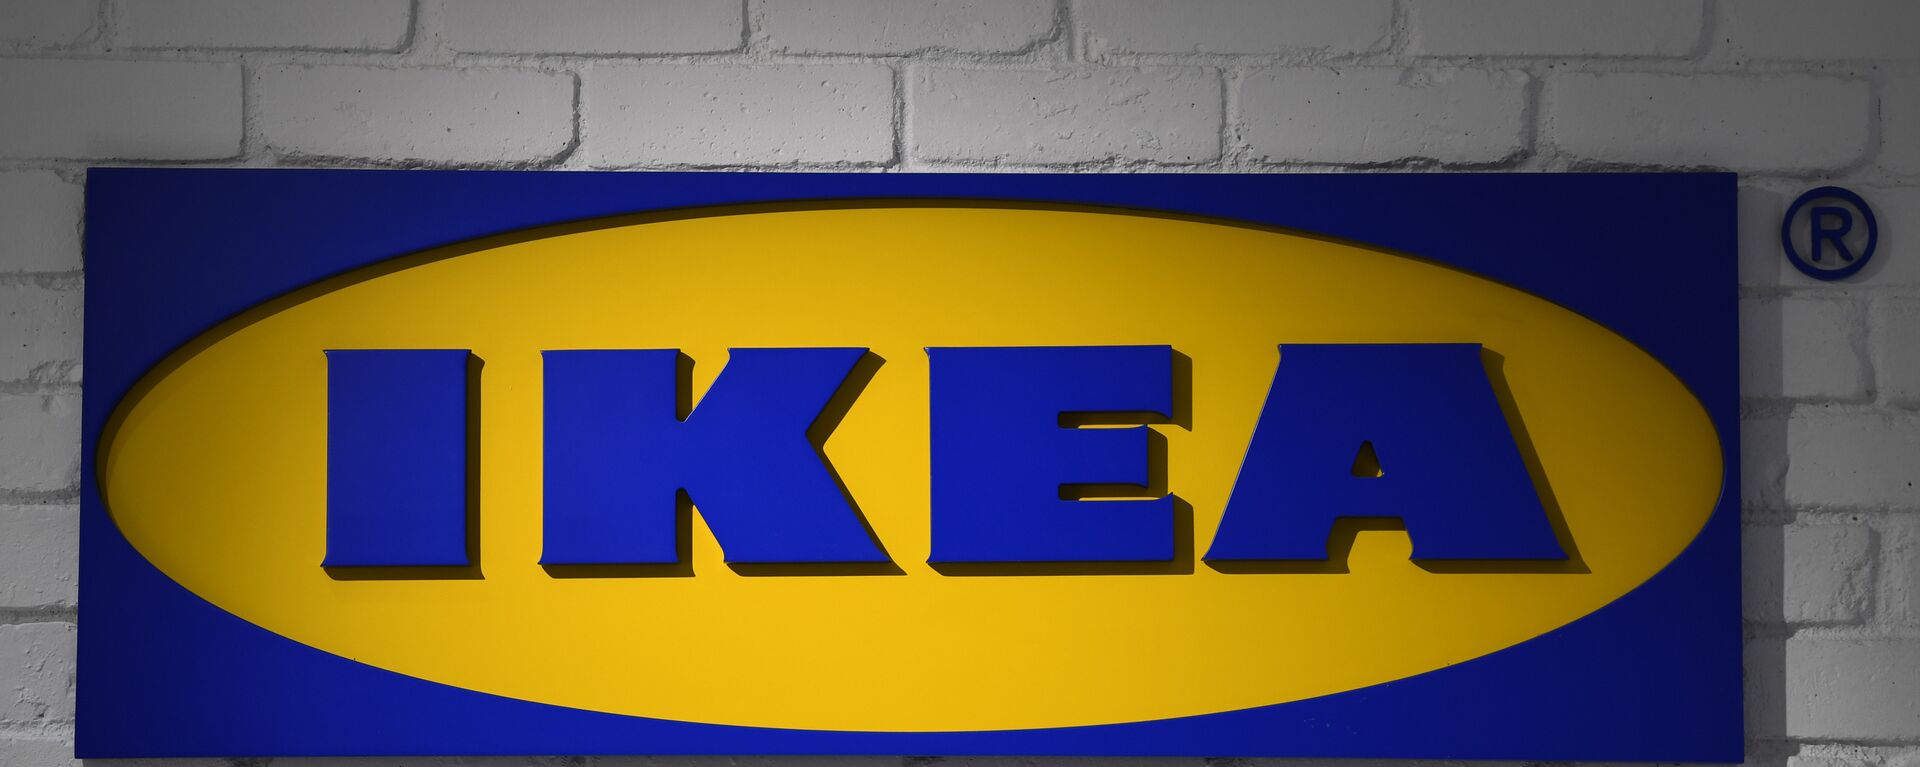 IKEA - Sputnik Türkiye, 1920, 15.05.2020